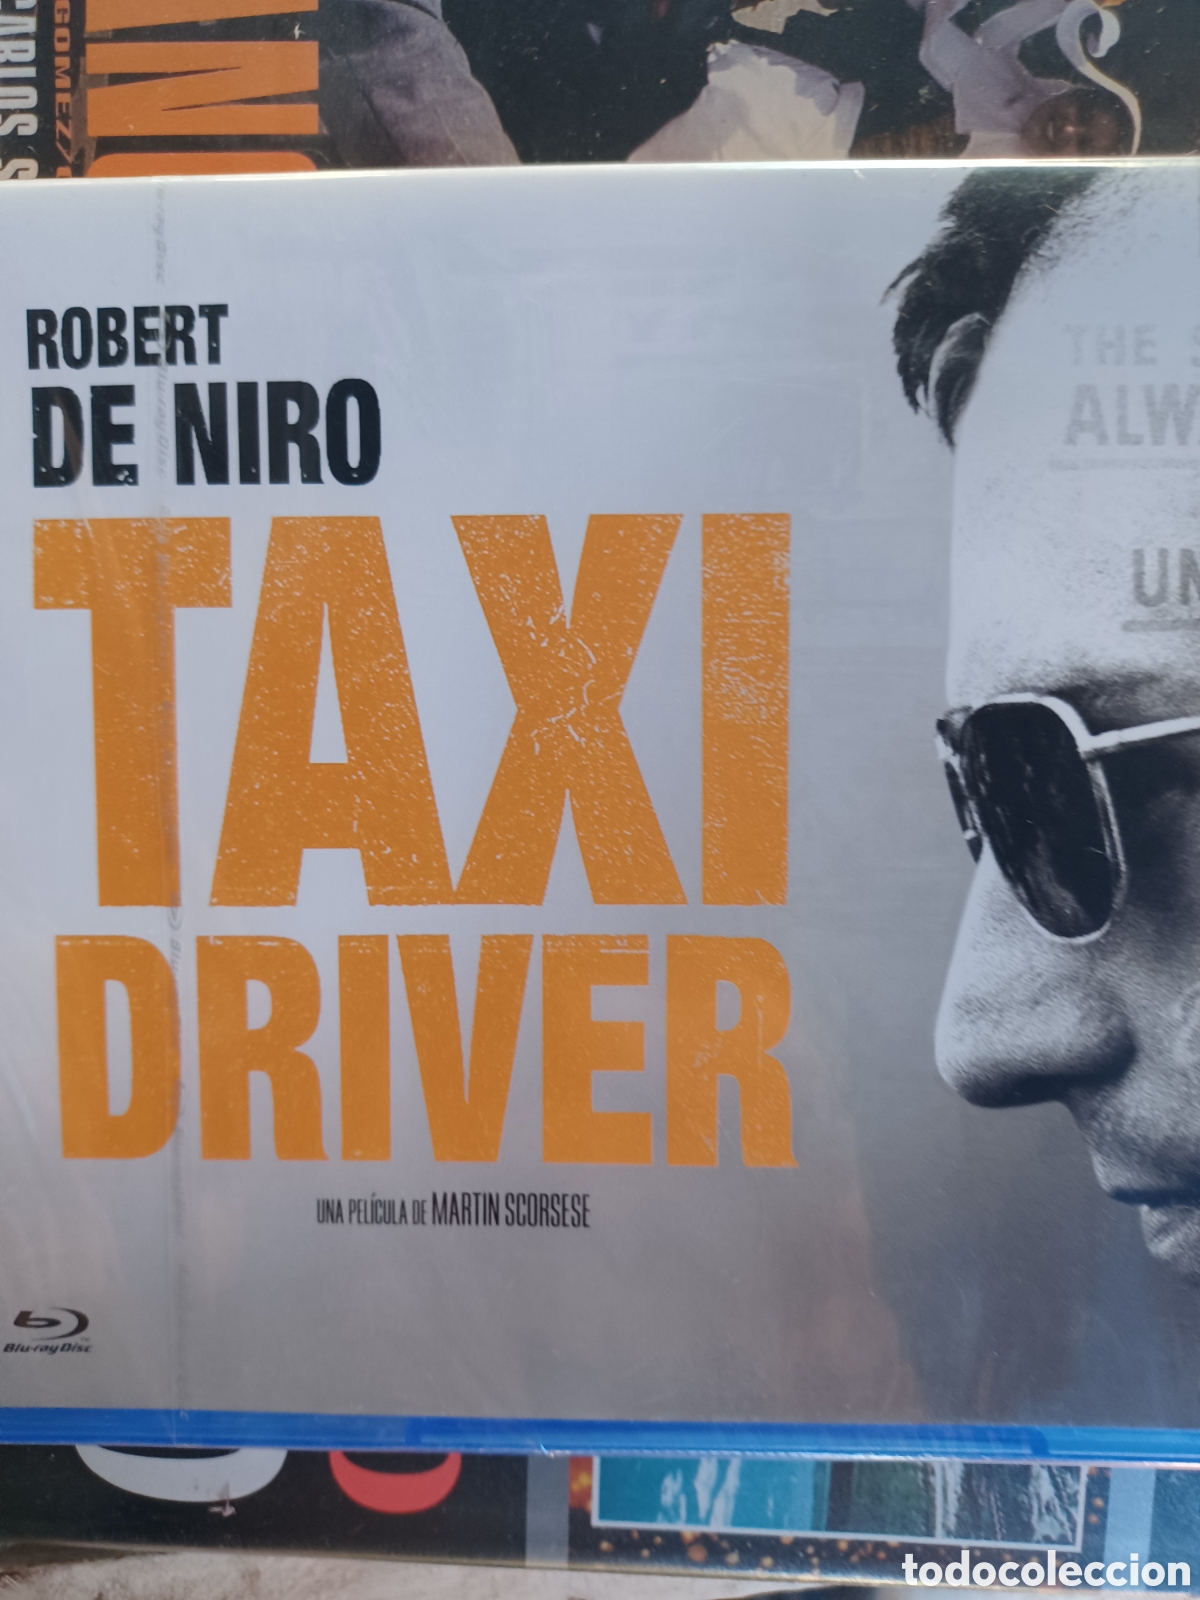 taxi driver robert de niro blu-ray disc nuevo p - Acquista Film di cinema  in Blu-Ray su todocoleccion